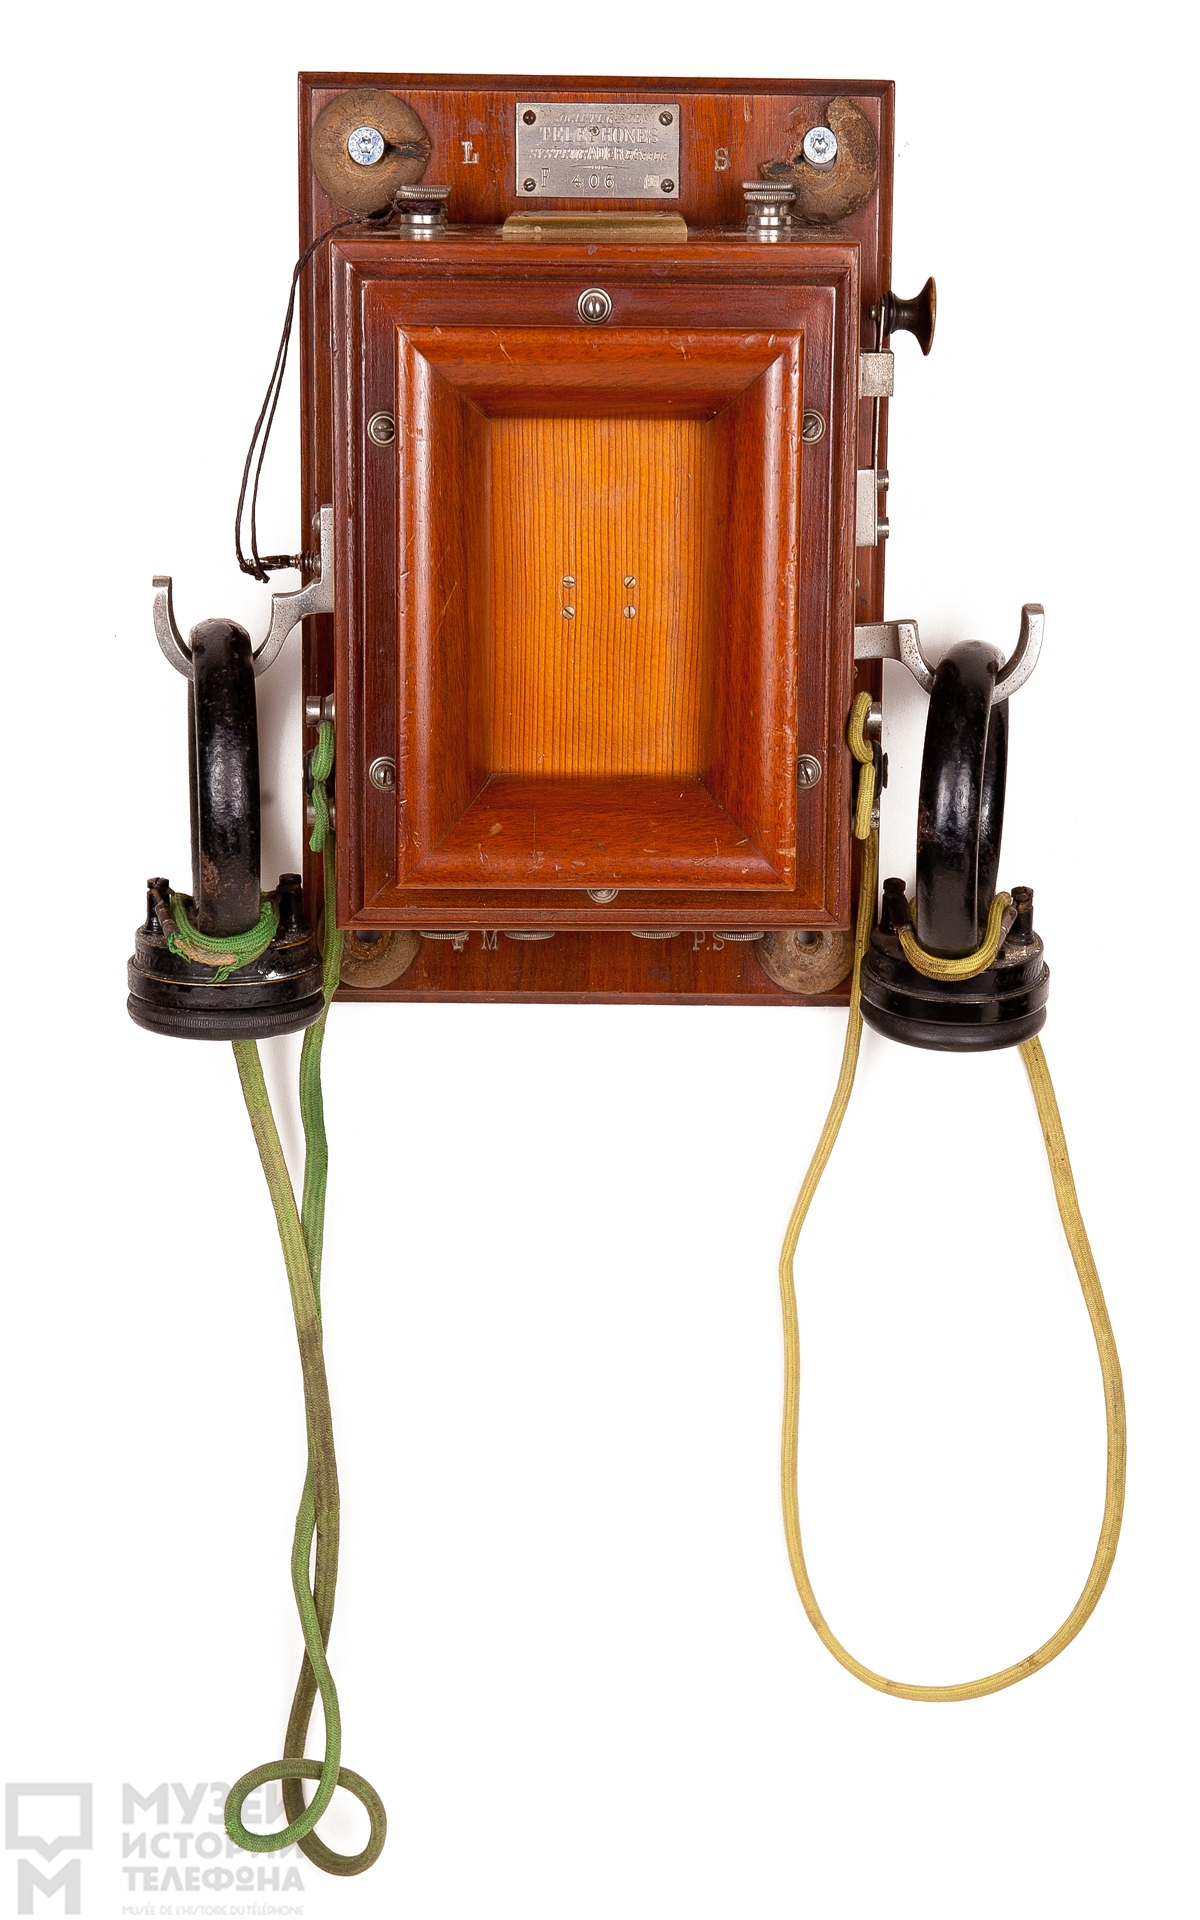 Телефонный аппарат с двумя петлеобразными наушниками системы Адера